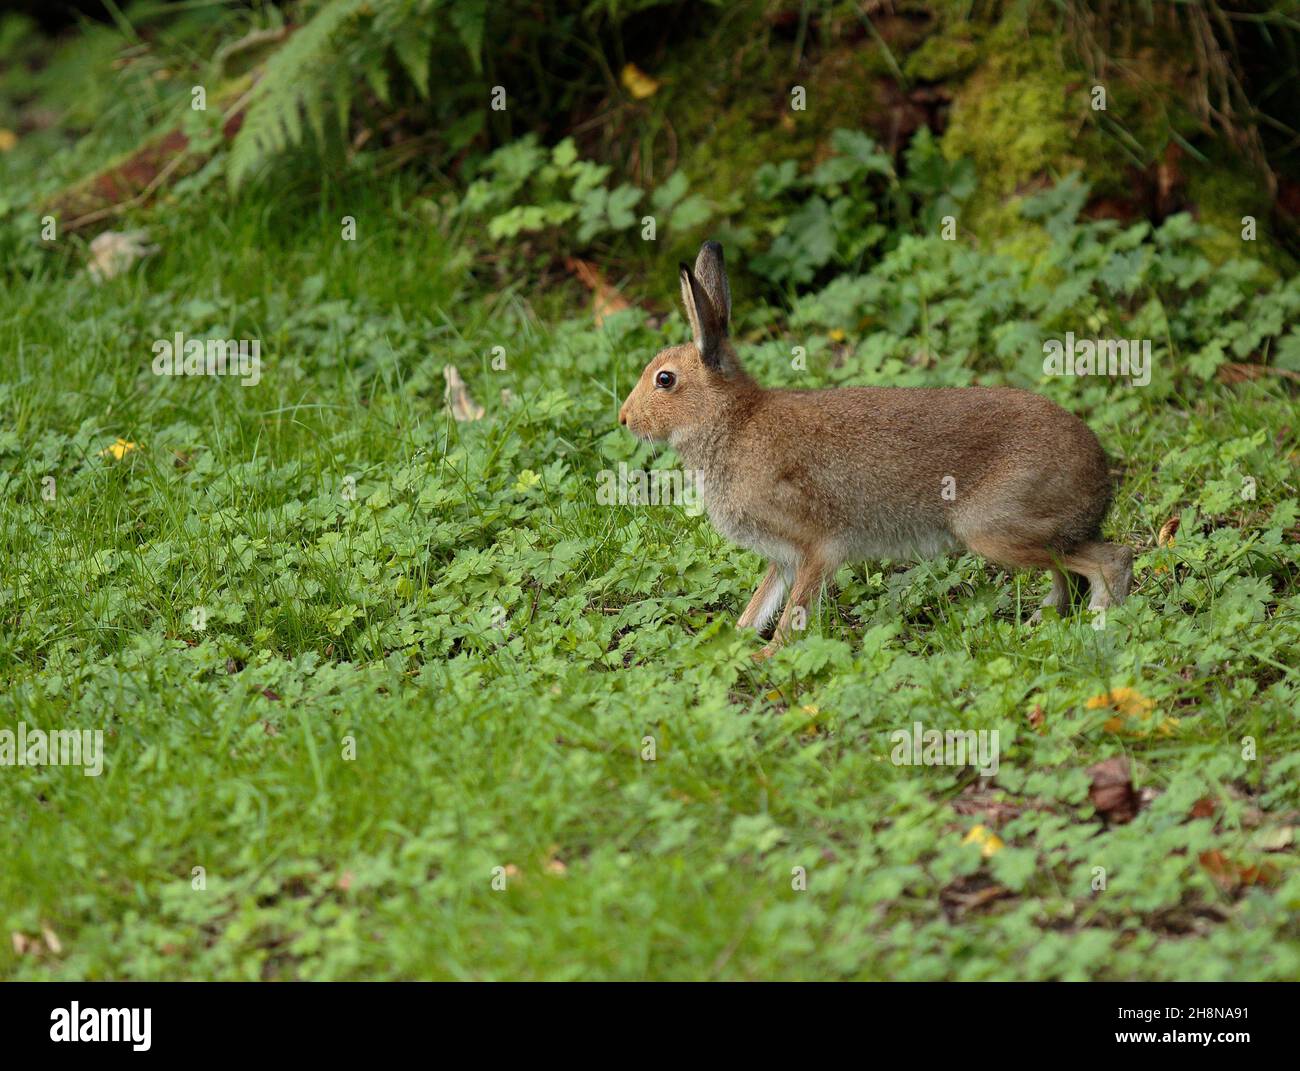 Irish hare Stock Photo